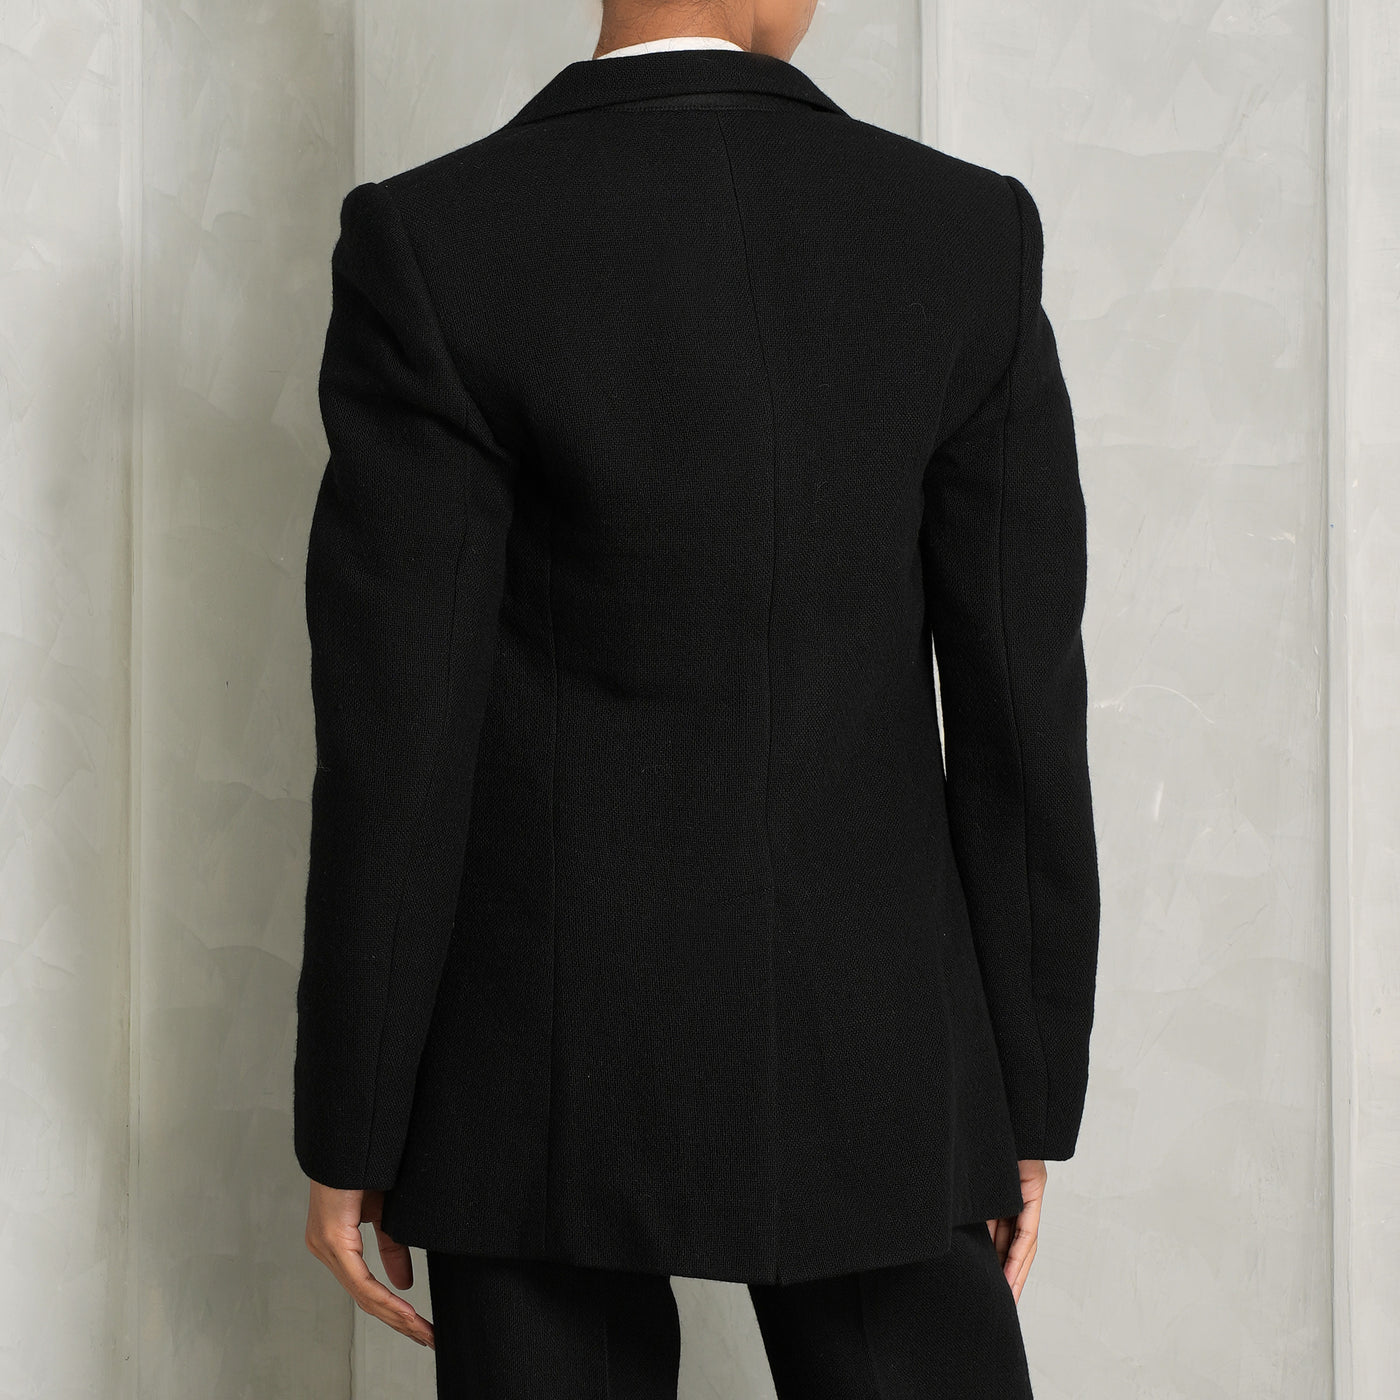 CHLOÉ black knit jacket